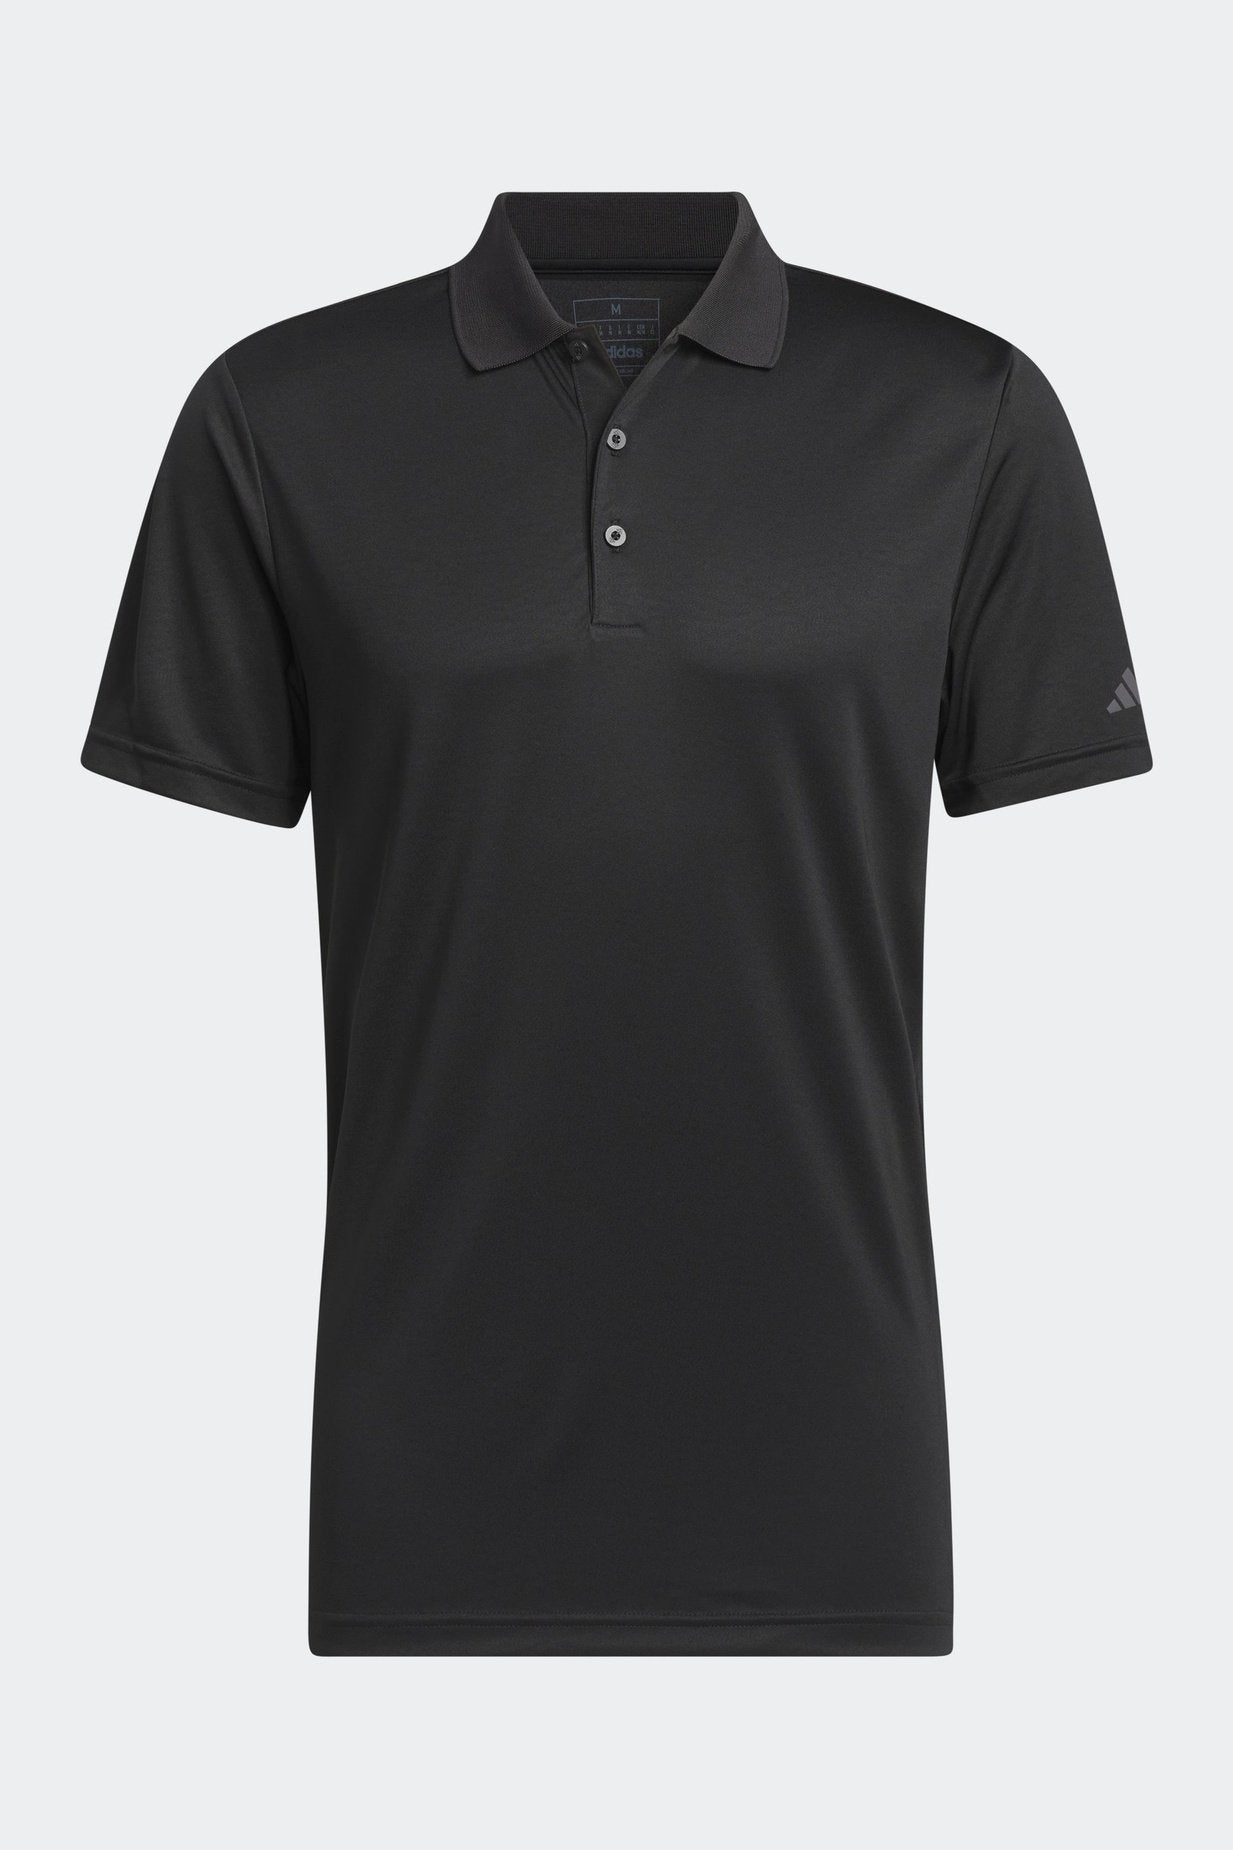 חולצת פולו לגברים CORE ADIDAS PERFORMANCE PRIMEGREEN בצבע שחור